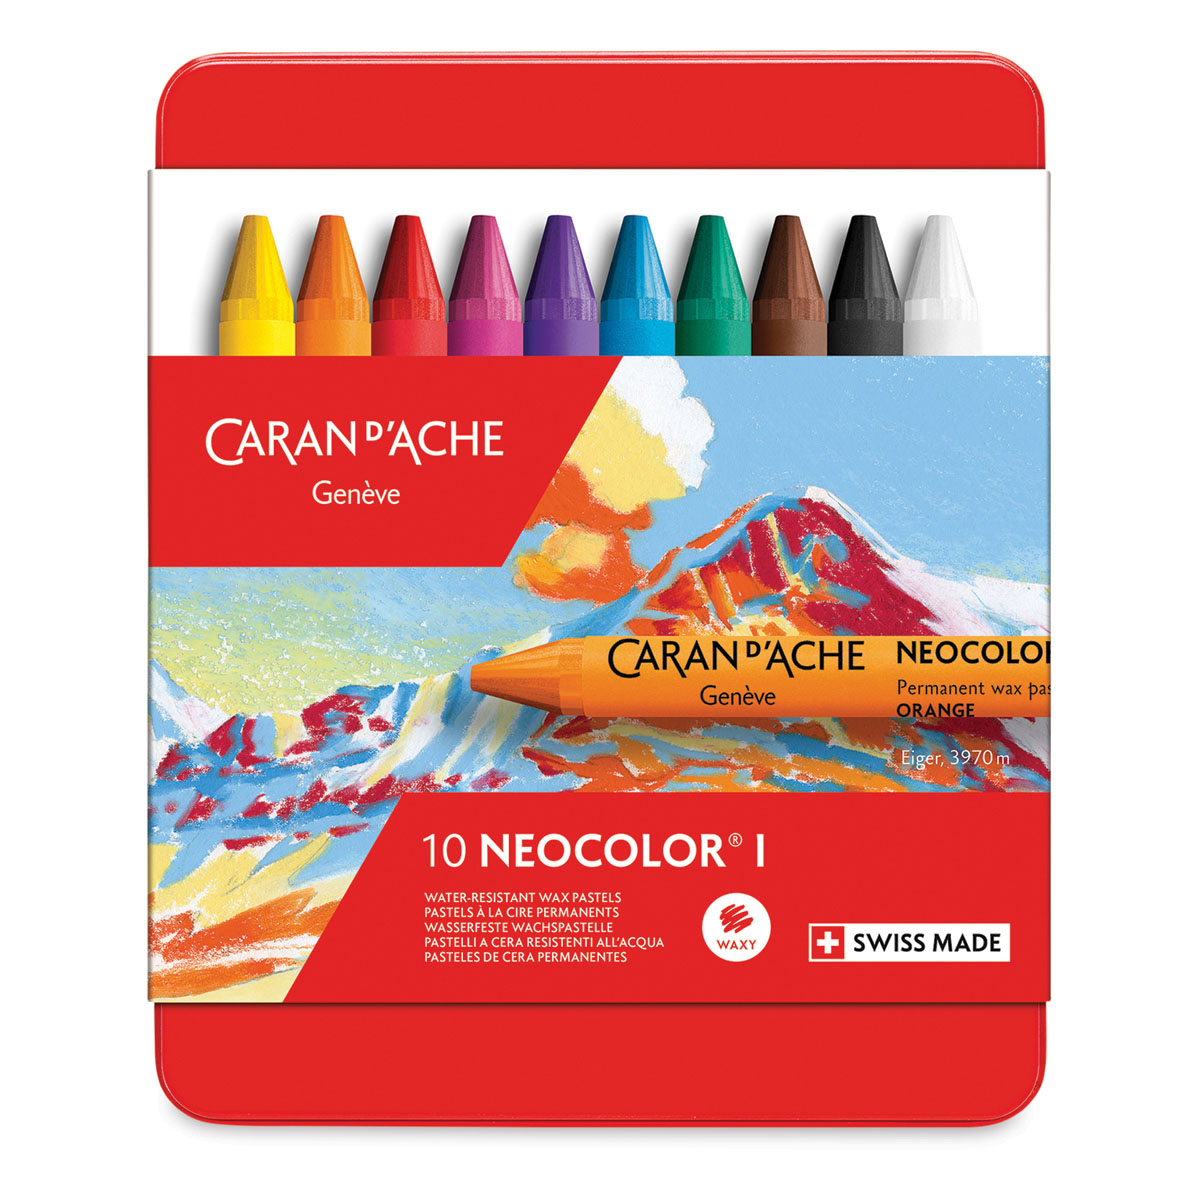 Caran d'Ache's 50 Neocolor I wax crayons - a closer look